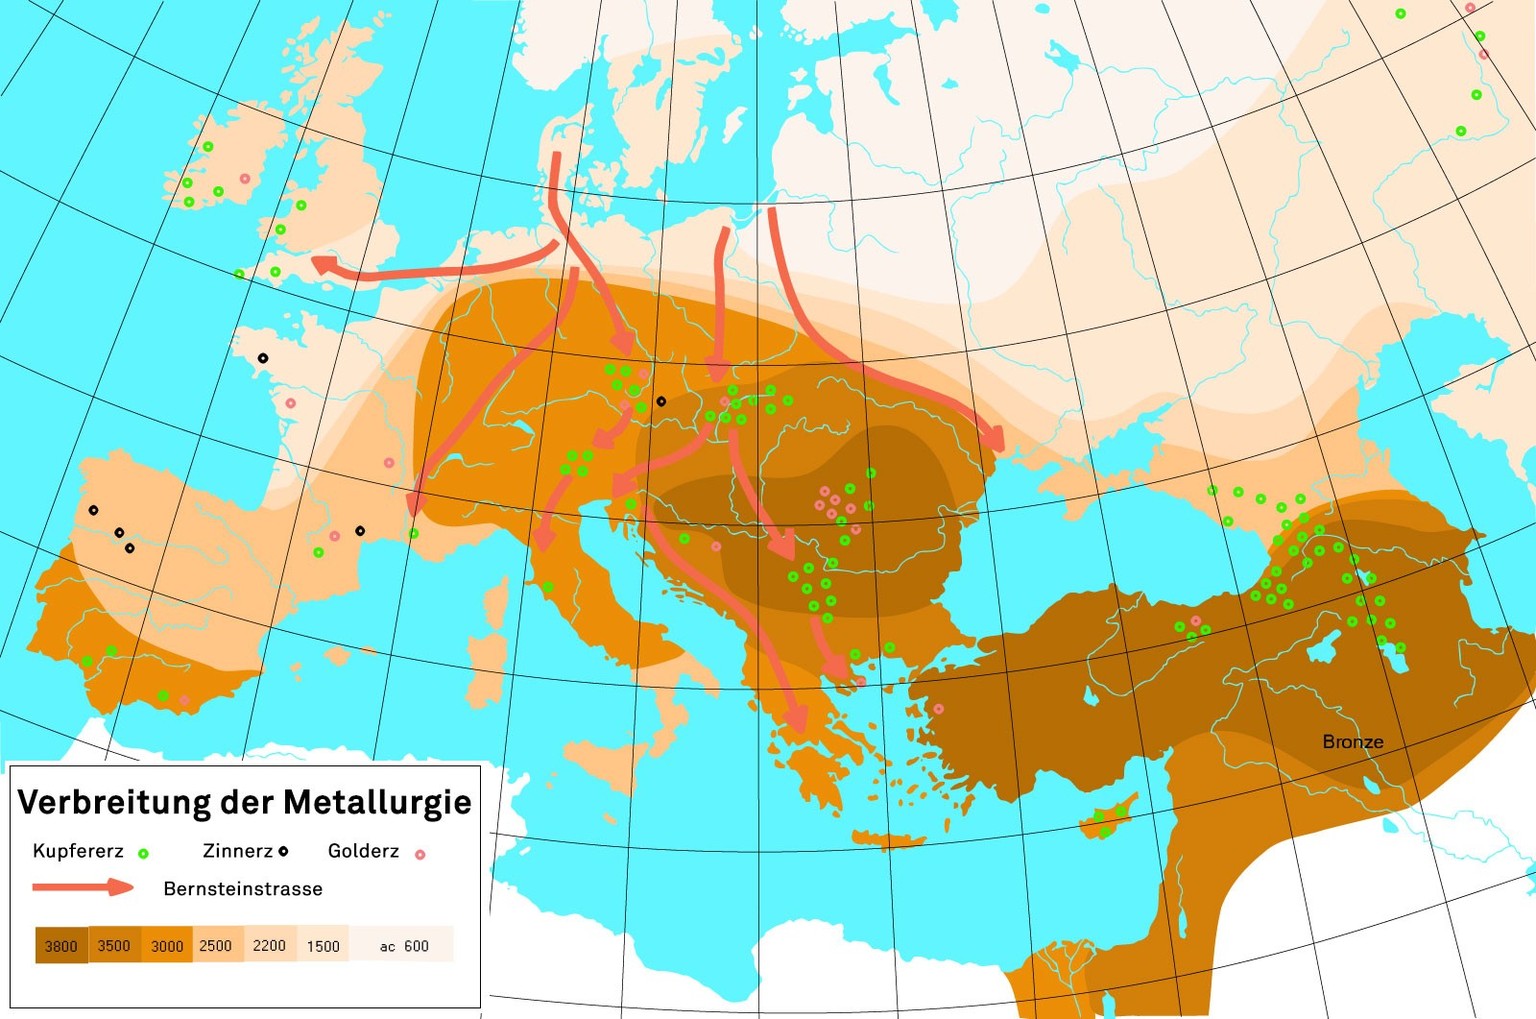 Verbreitung von Techniken der Metallurgie in einem Zeitraum von 3800 v. Chr. bis in die Bronzezeit (2200 bis 800 v. Chr.).
https://commons.wikimedia.org/wiki/File:Metallurgical_diffusion.svg